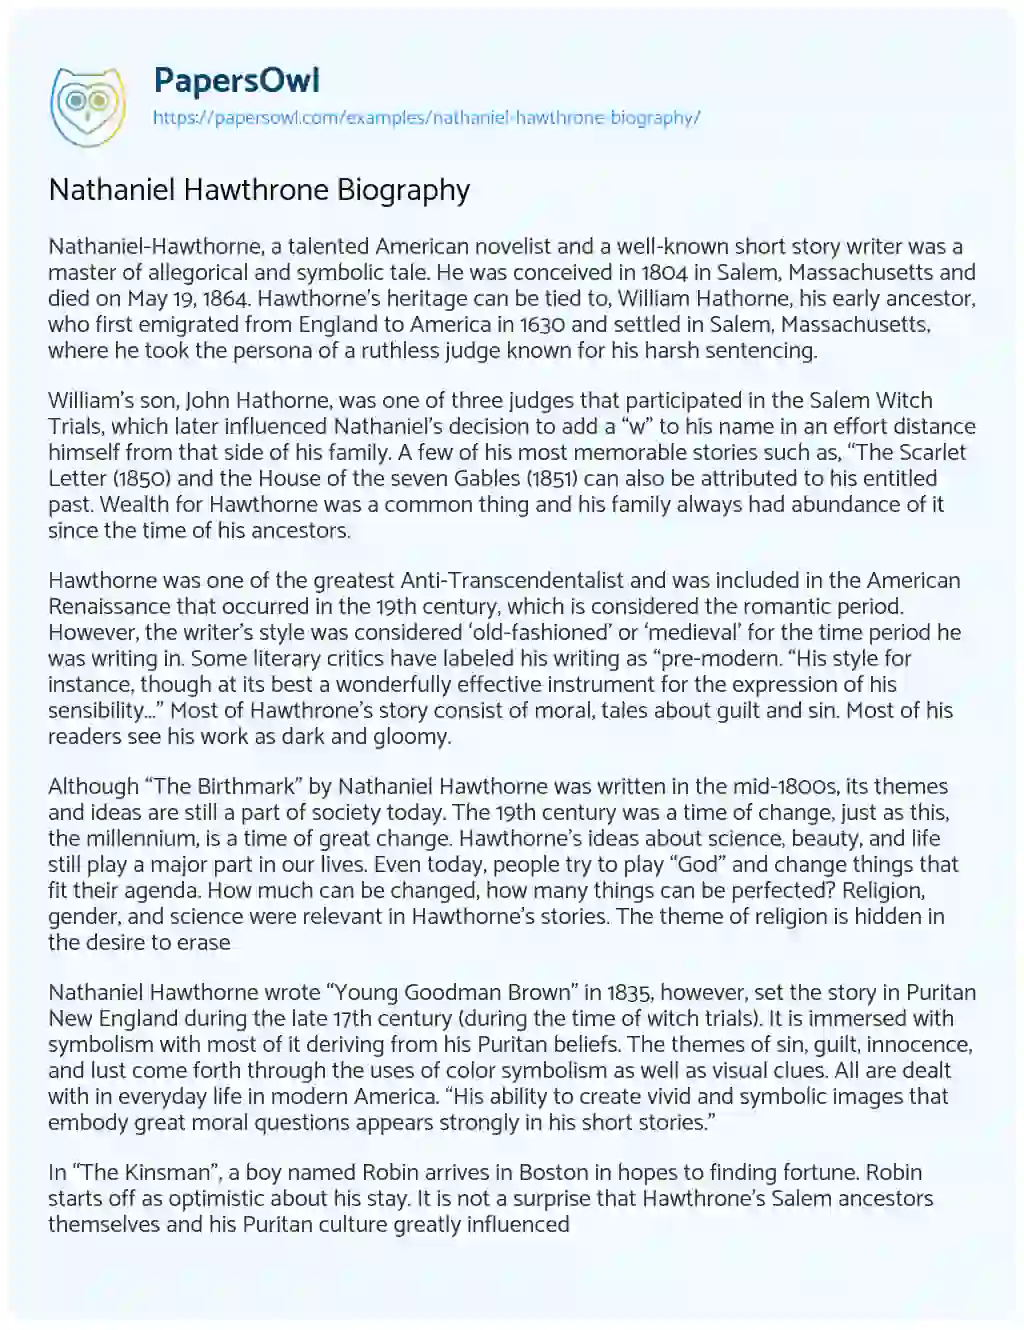 Nathaniel Hawthrone Biography essay